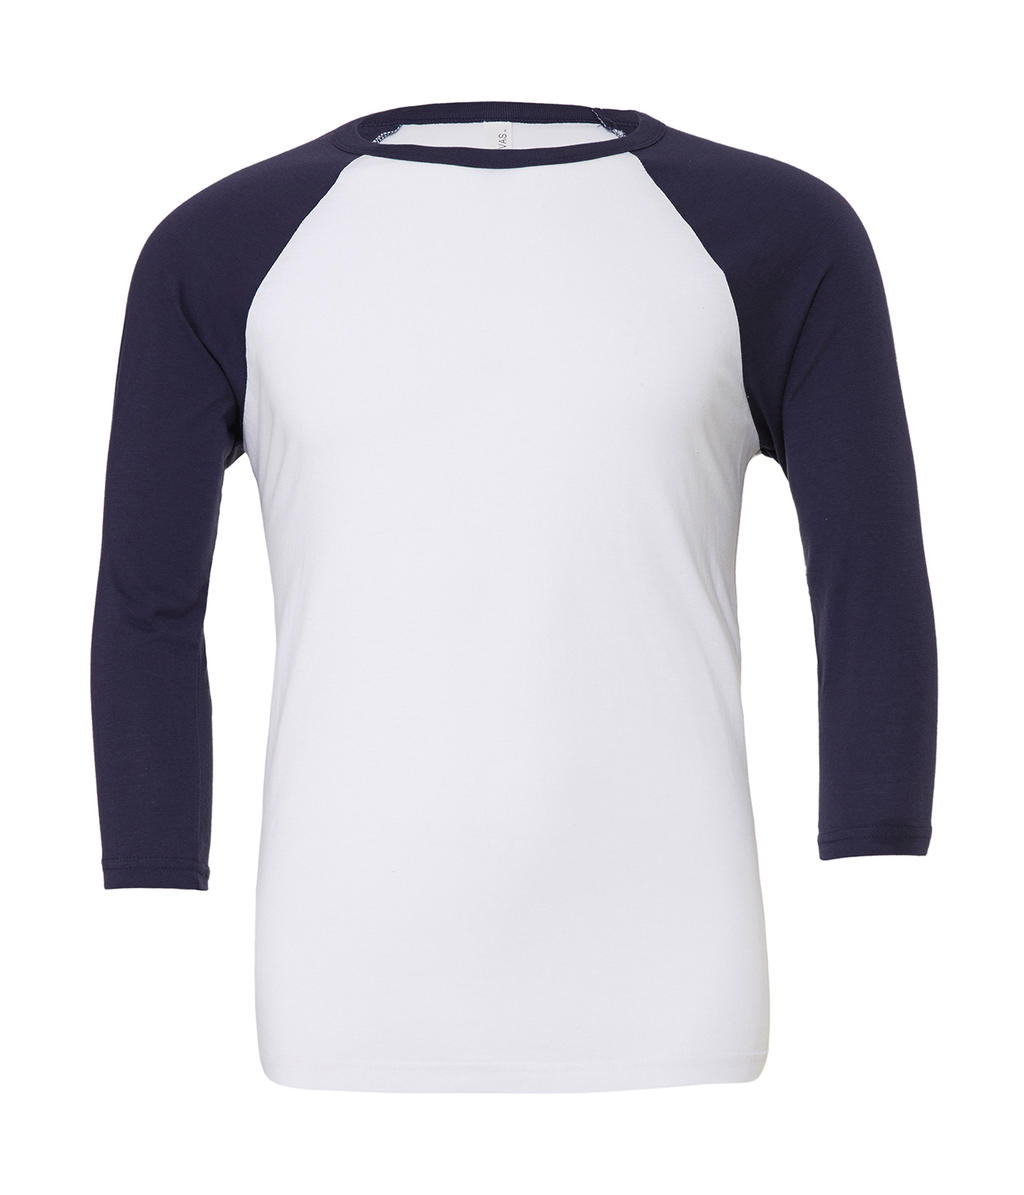  Unisex 3/4 Sleeve Baseball T-Shirt in Farbe White/Navy